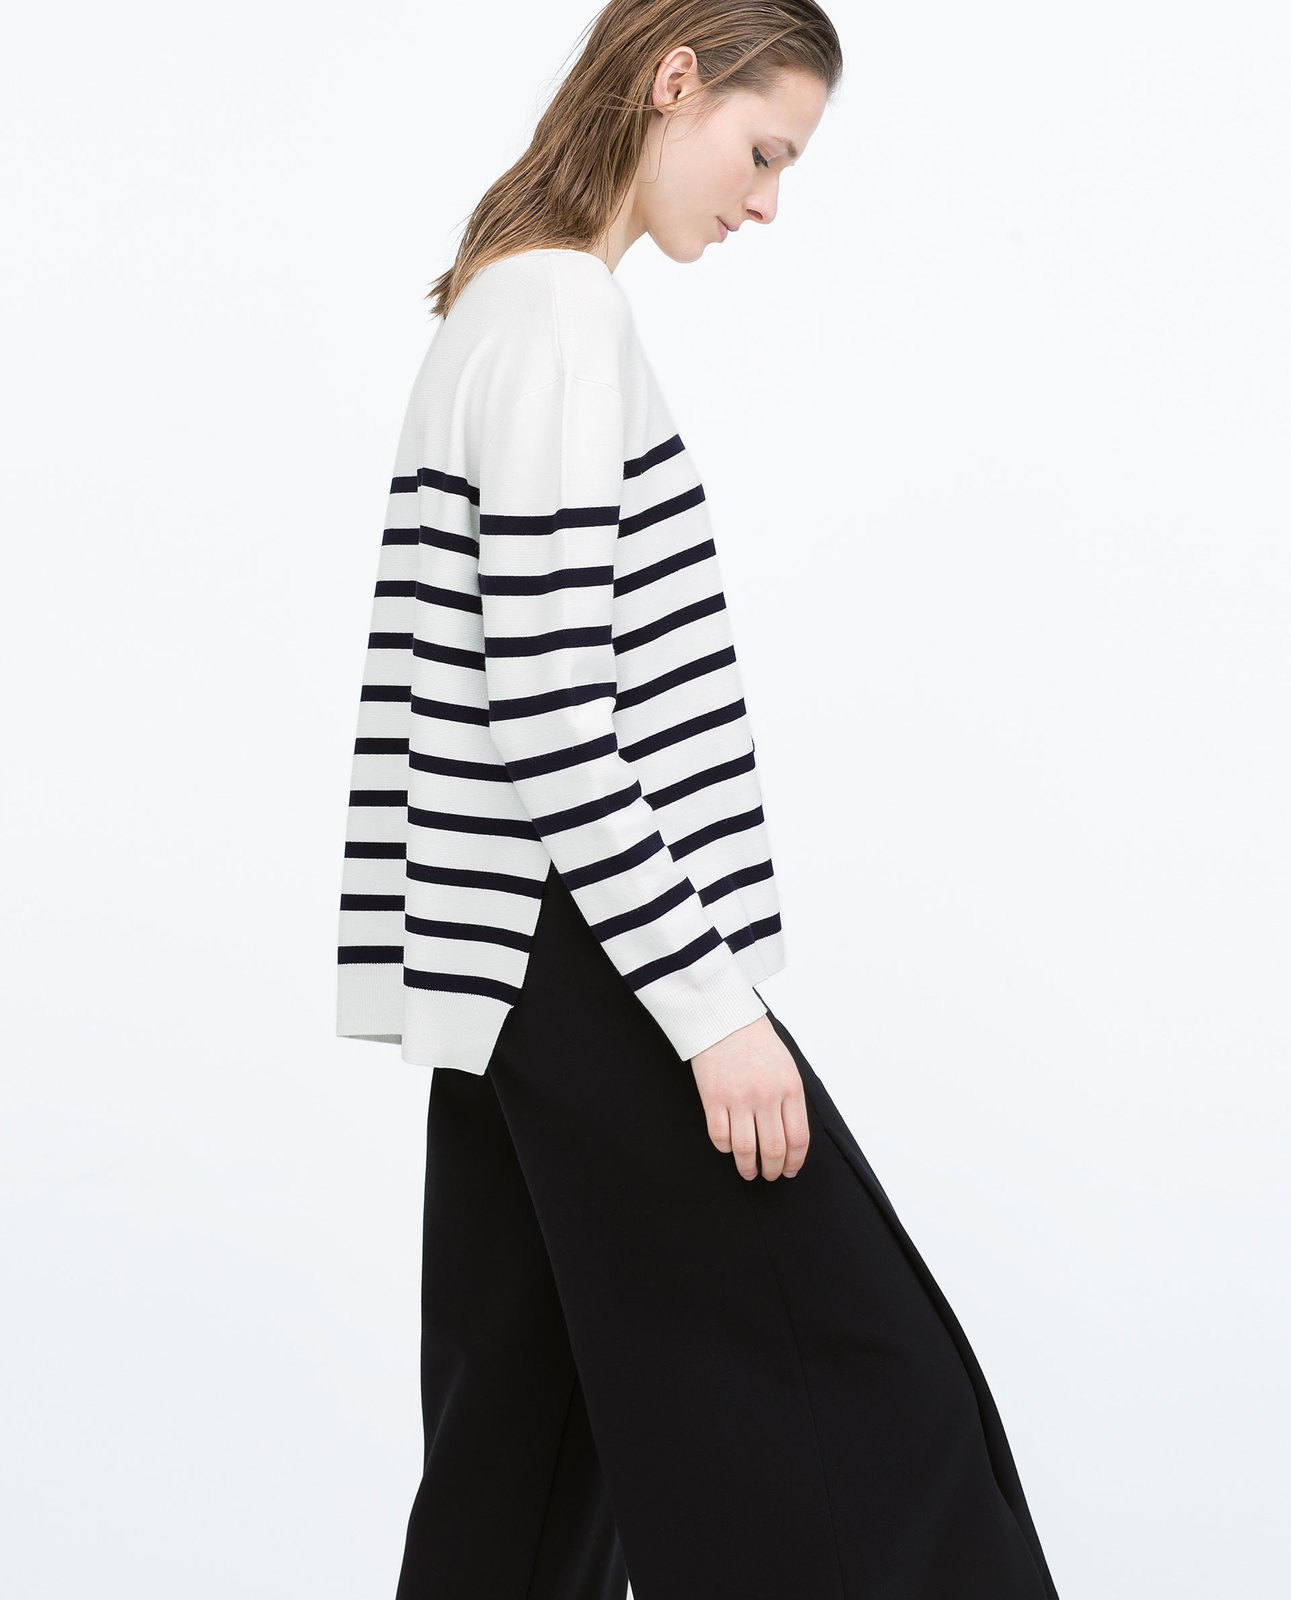 Zara tengerészcsíkos fekete-fehér pulóver 2015.02.23 fotója